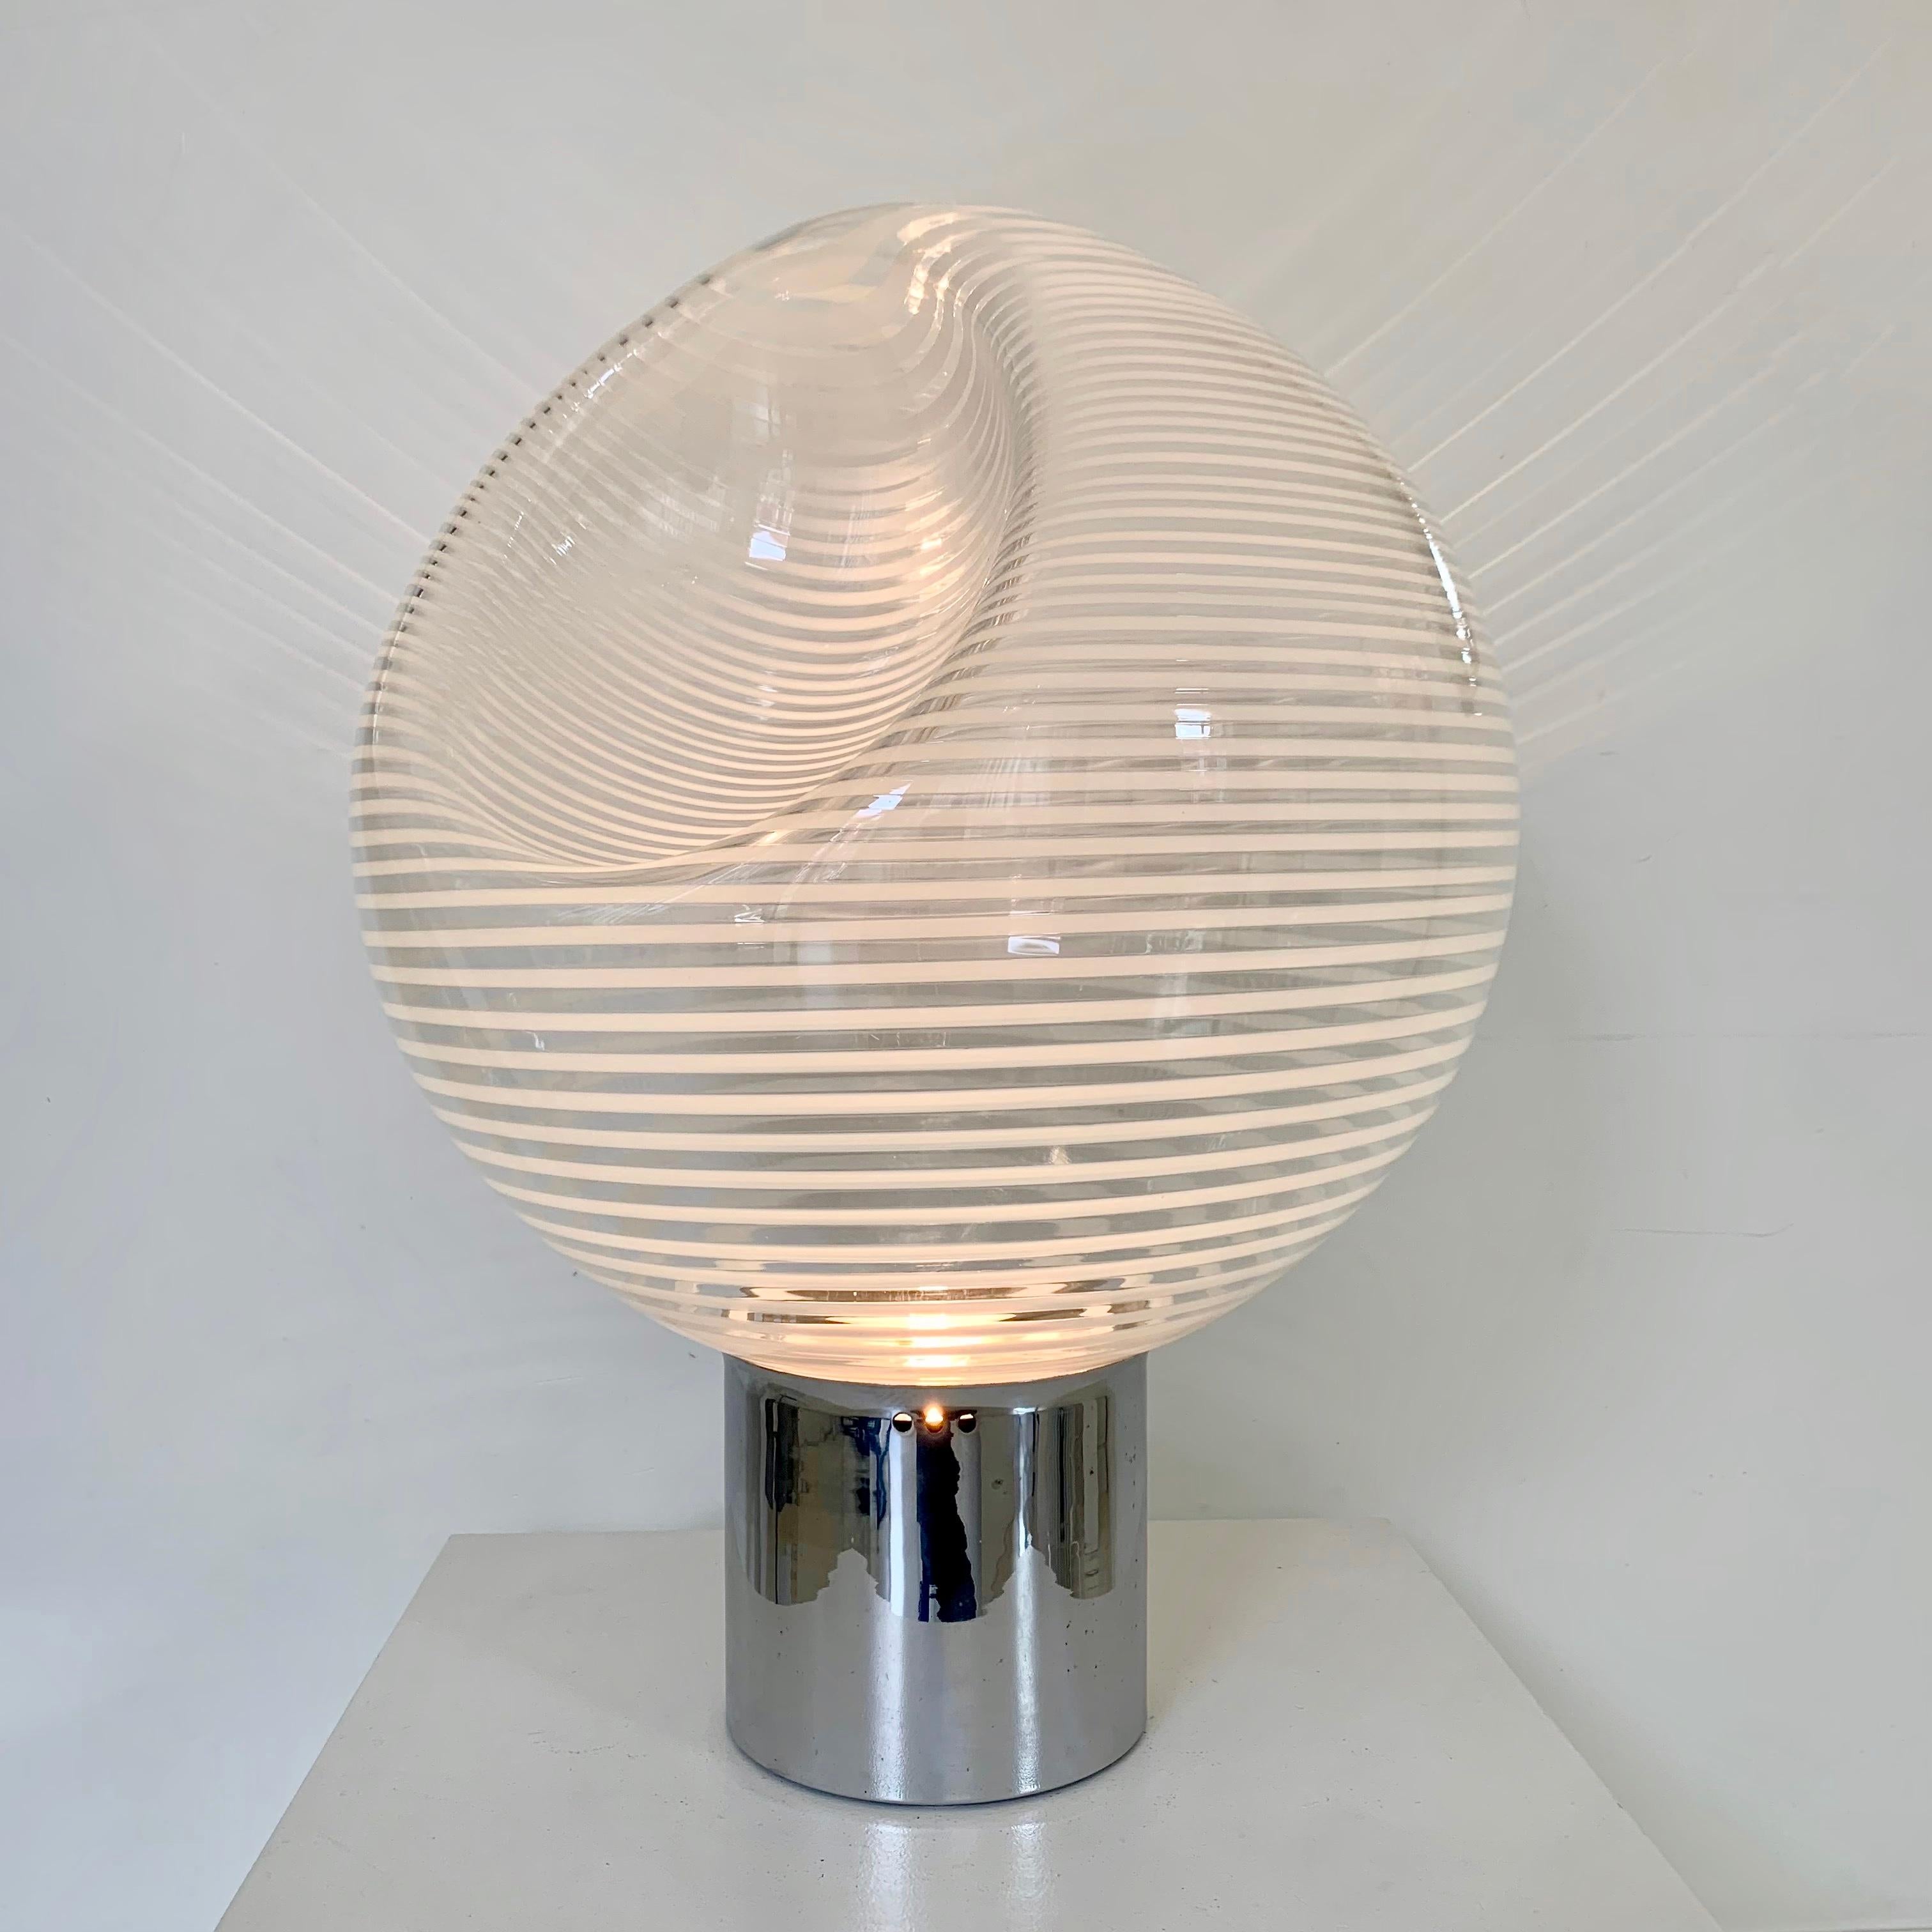 Rare lampe de table modèle CIRCA de Vistosi, vers 1960, Italie.
Verre strié de Murano, métal chromé.
Dimensions : 60 cm de hauteur, 45 cm de diamètre : 60 cm de hauteur, 45 cm de diamètre.
Lampe à une ampoule E27.
État vintage d'origine.
Lampe de